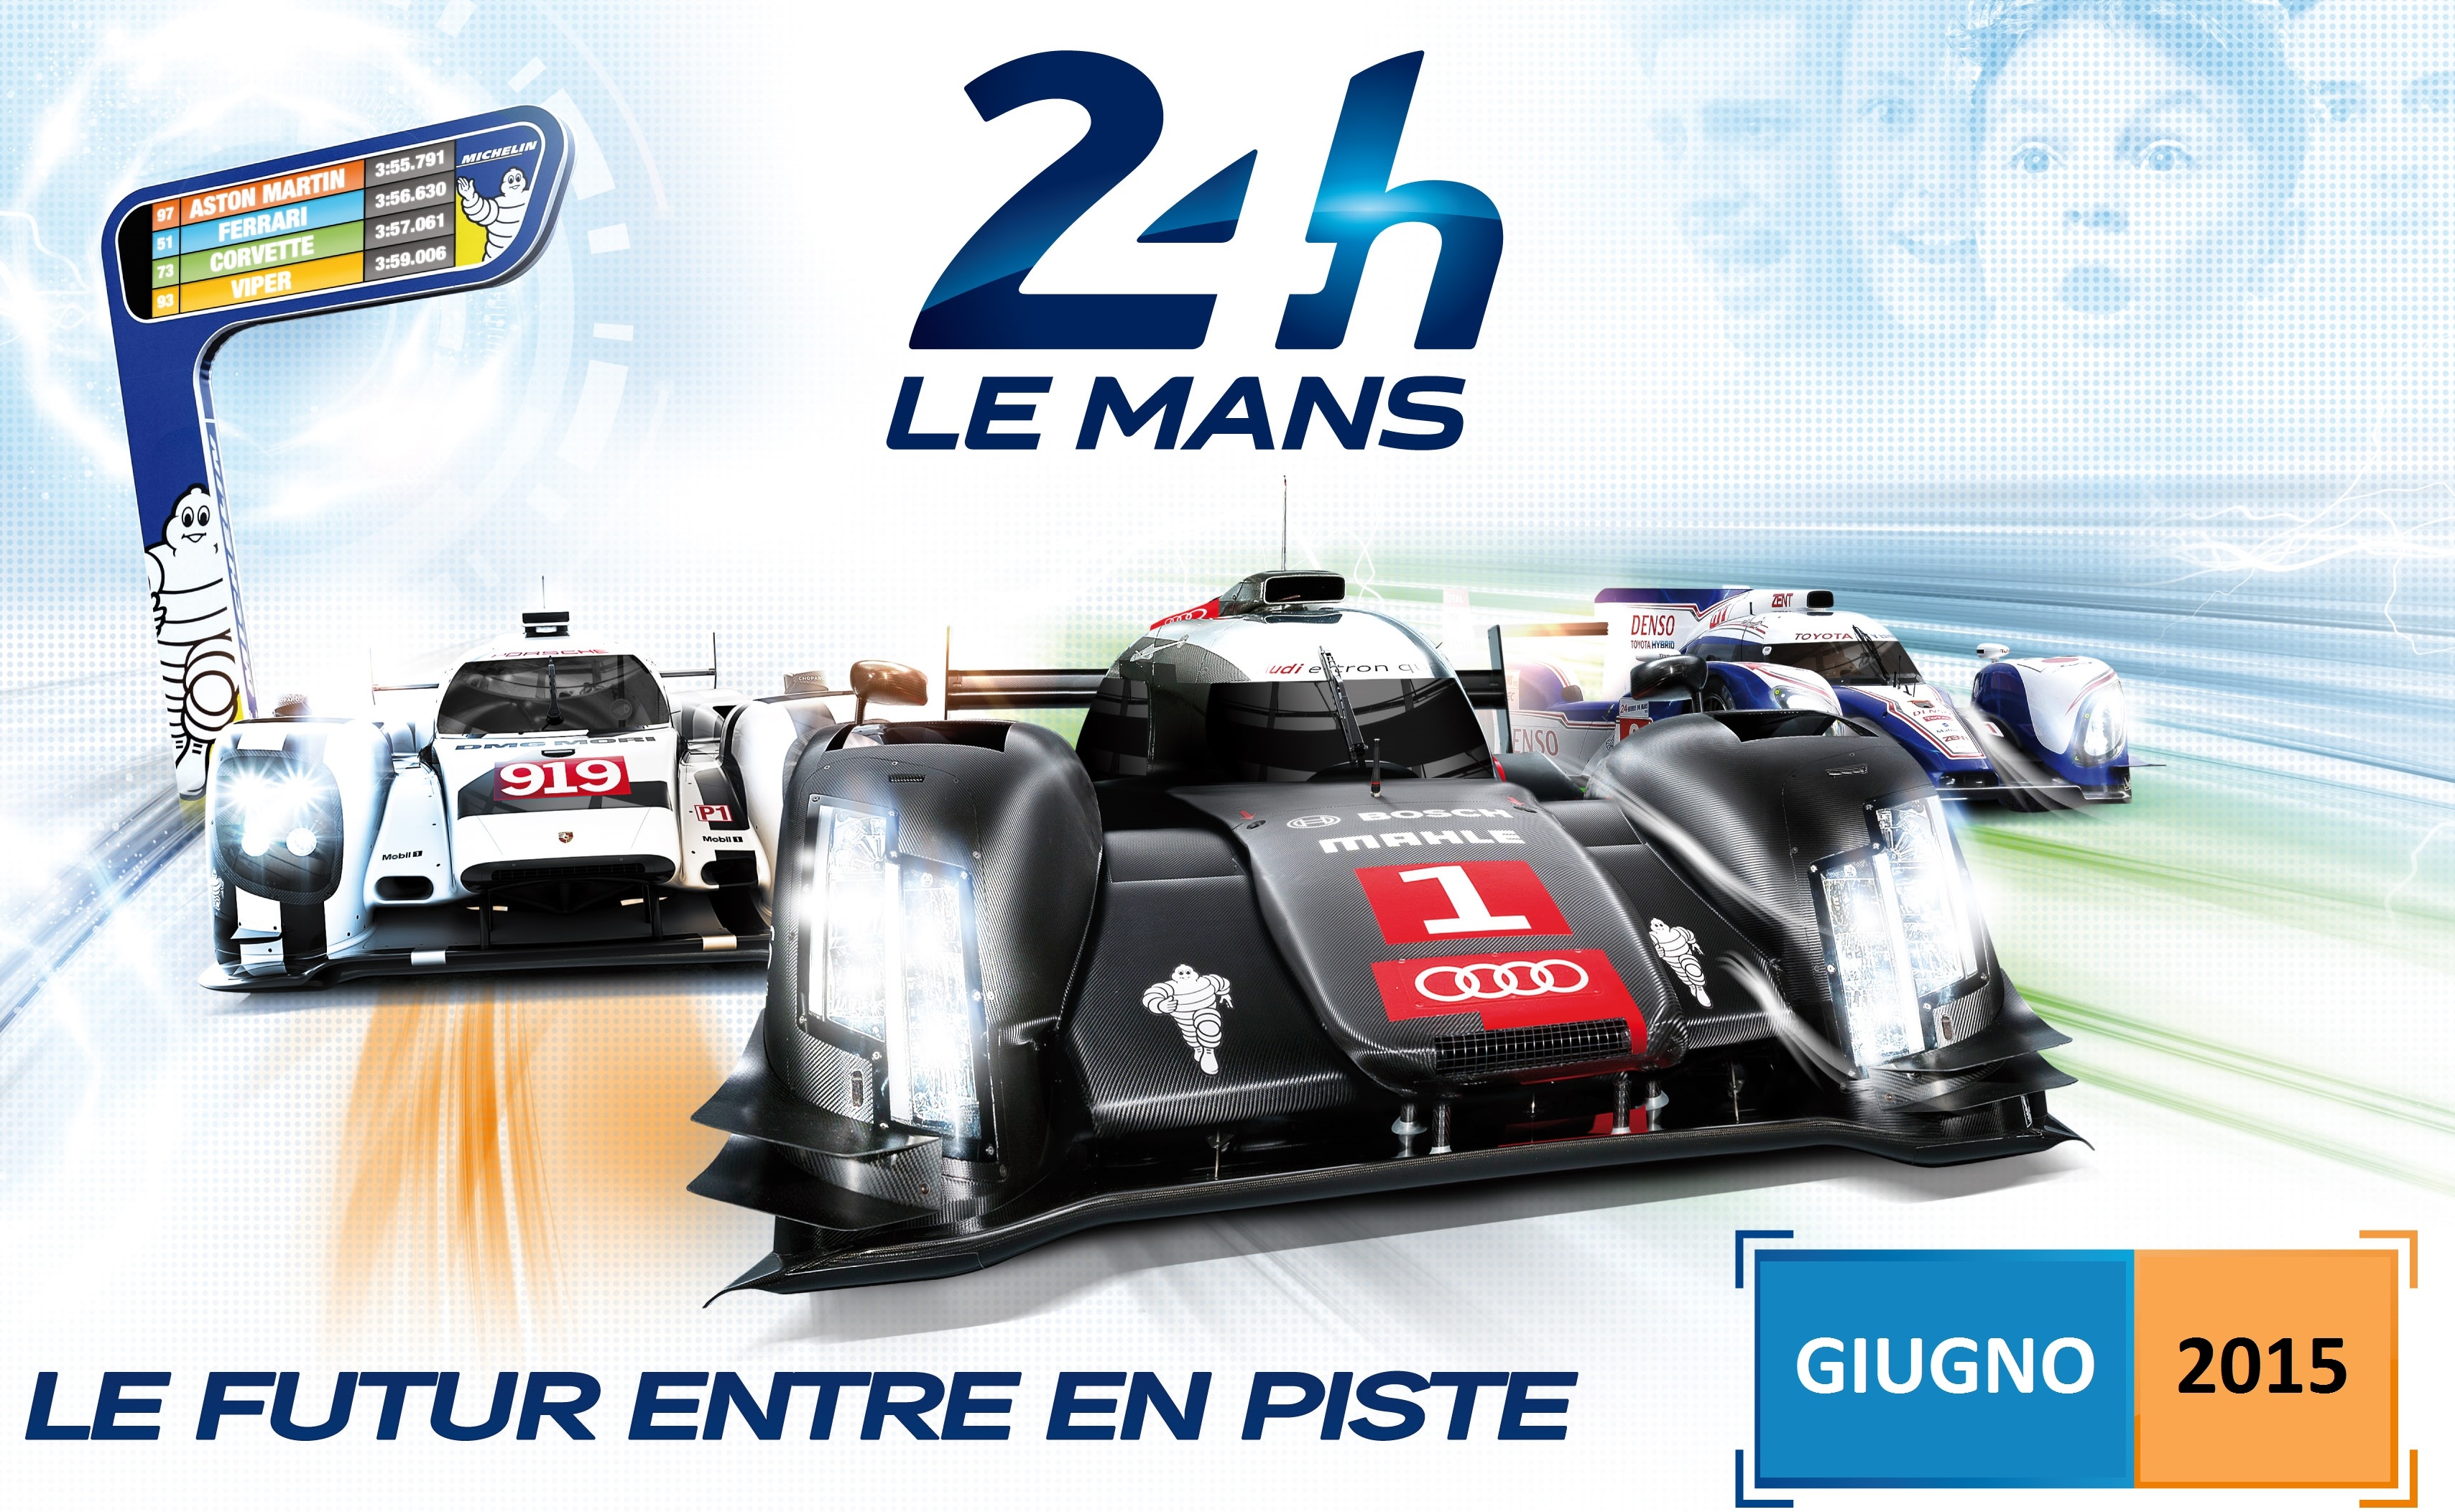 24 ore di Le Mans 2015: dal 13 al 14 giugno